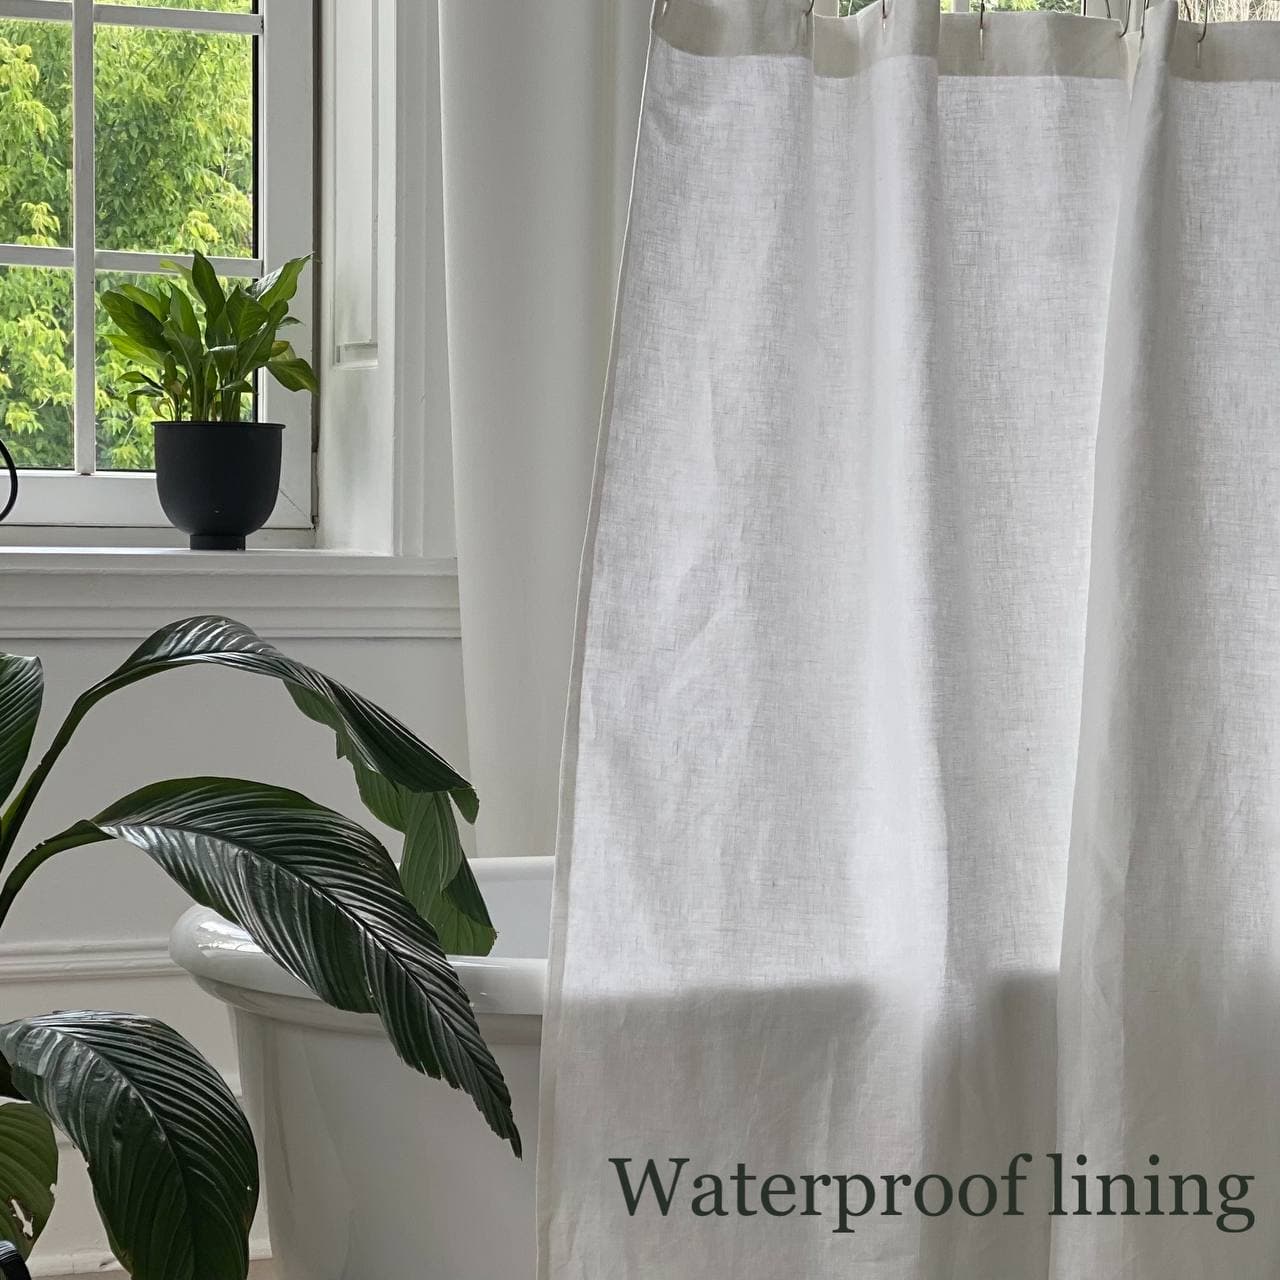 Lining:Waterproof